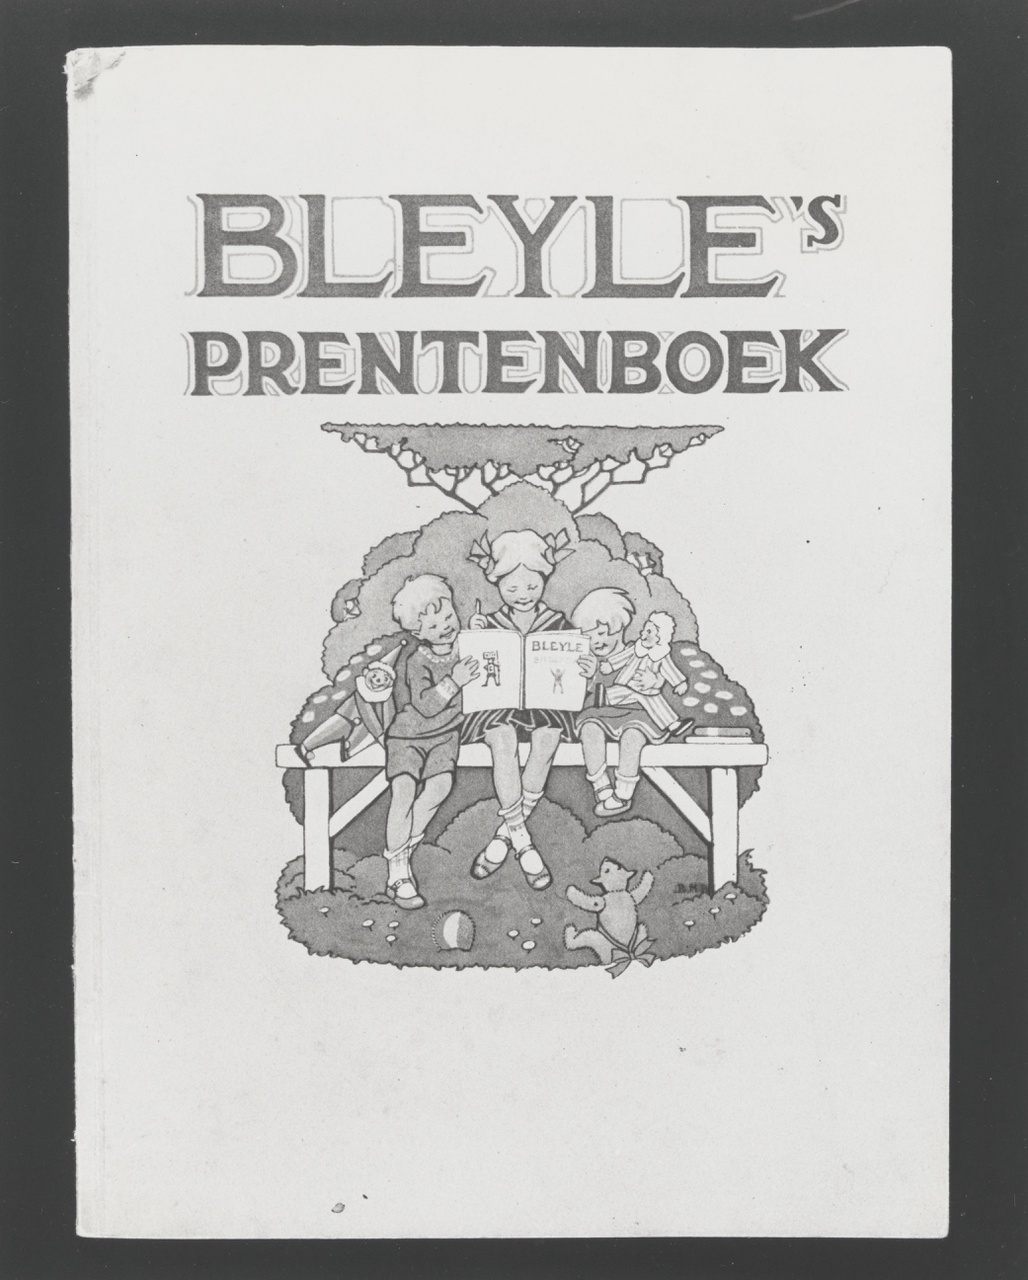 Kinder reclameboekje "Bleyle's Prentenboek"